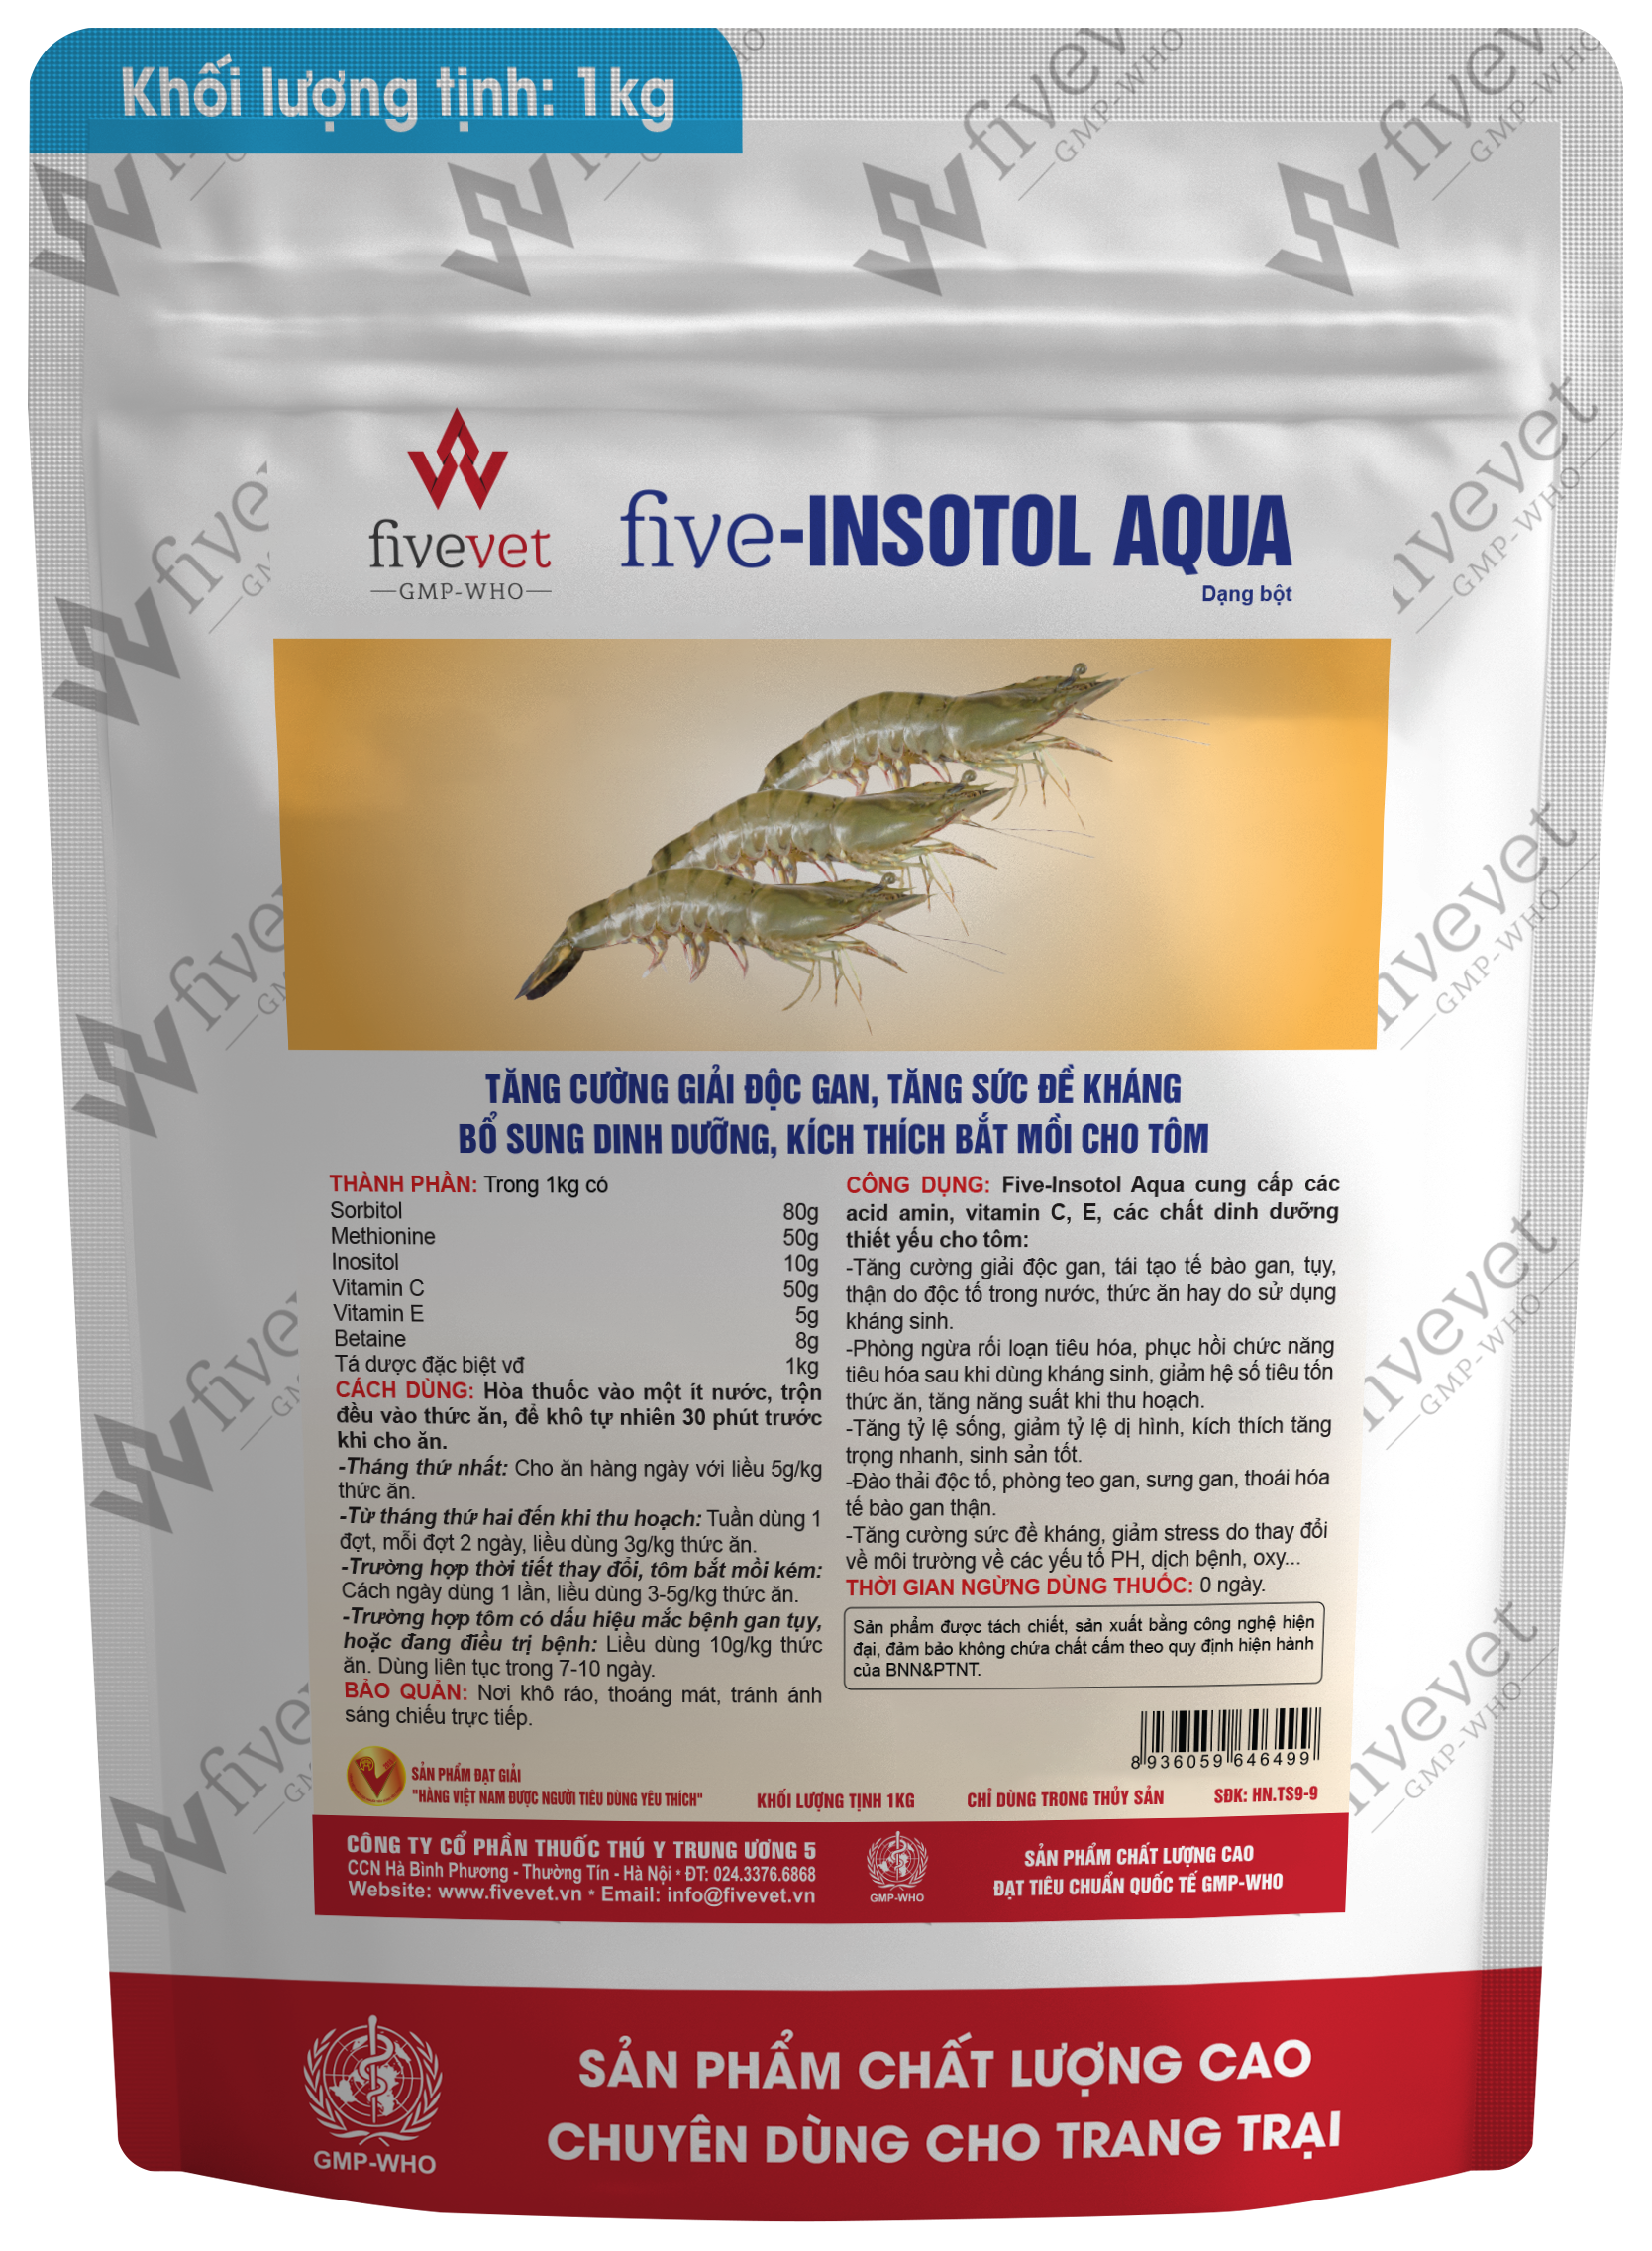 Five-Insotol Aqua